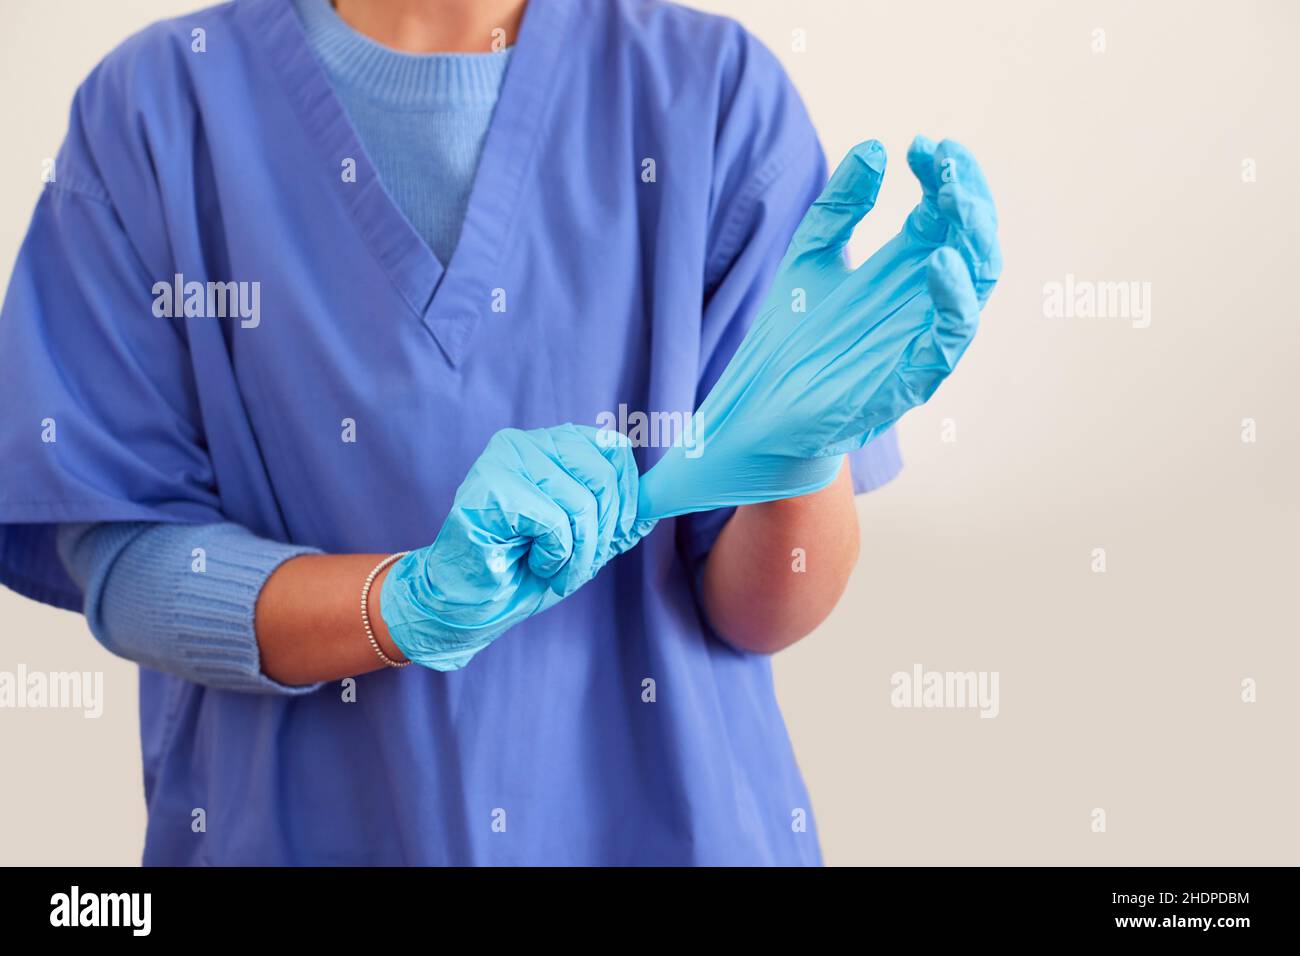 Arbeitsschutzkleidung, Handschuhe, steril, Peelings, Arbeitsschutzkleidung, Handschuh, Sterile, Peeling Stockfoto